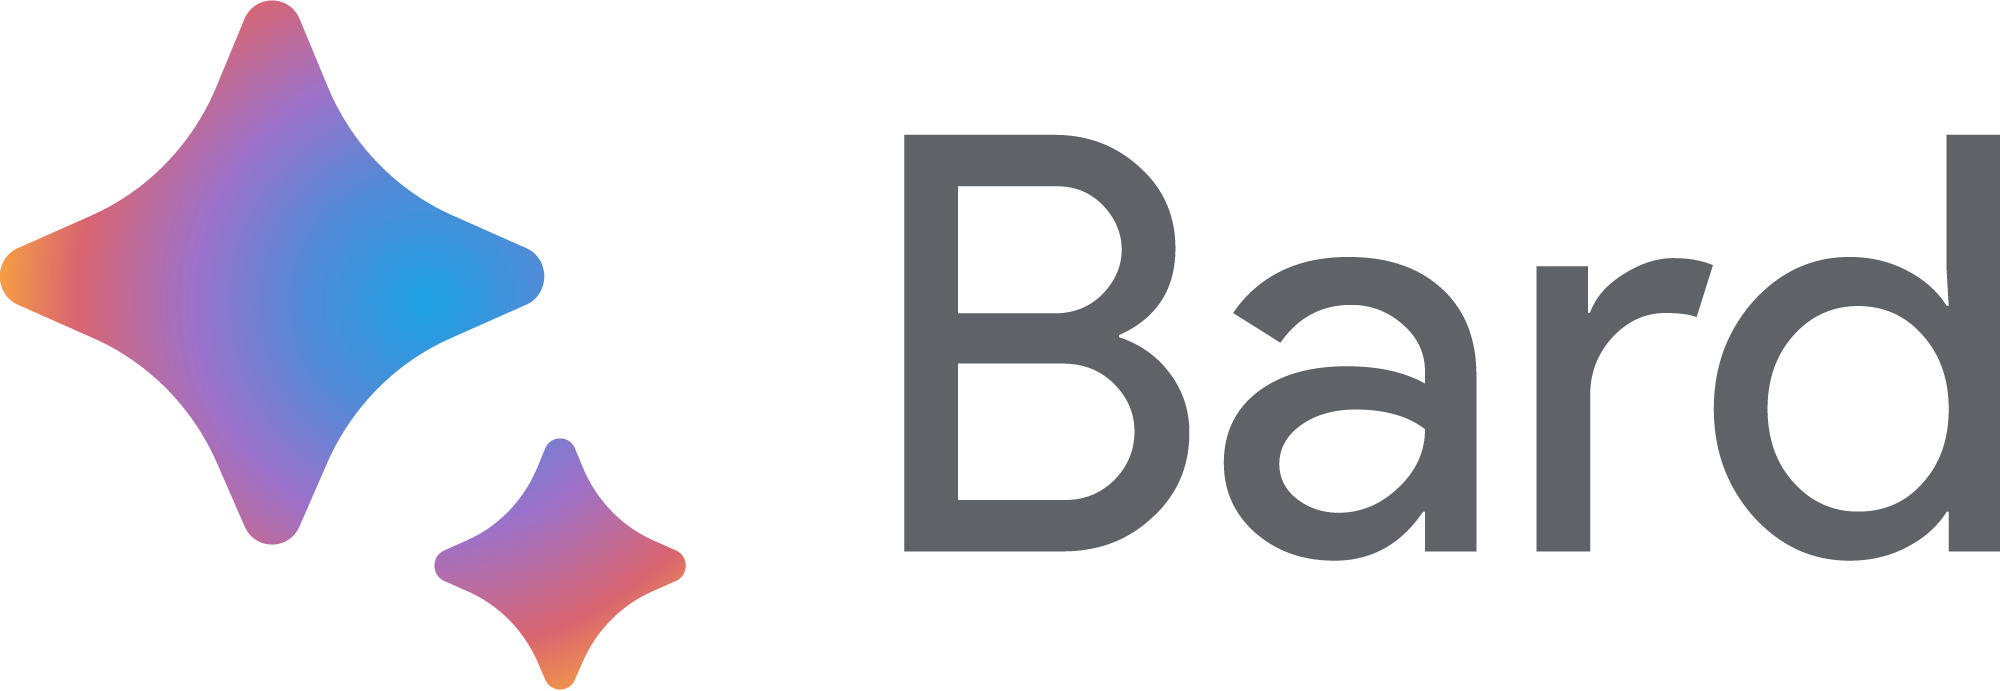 bard-logo-png